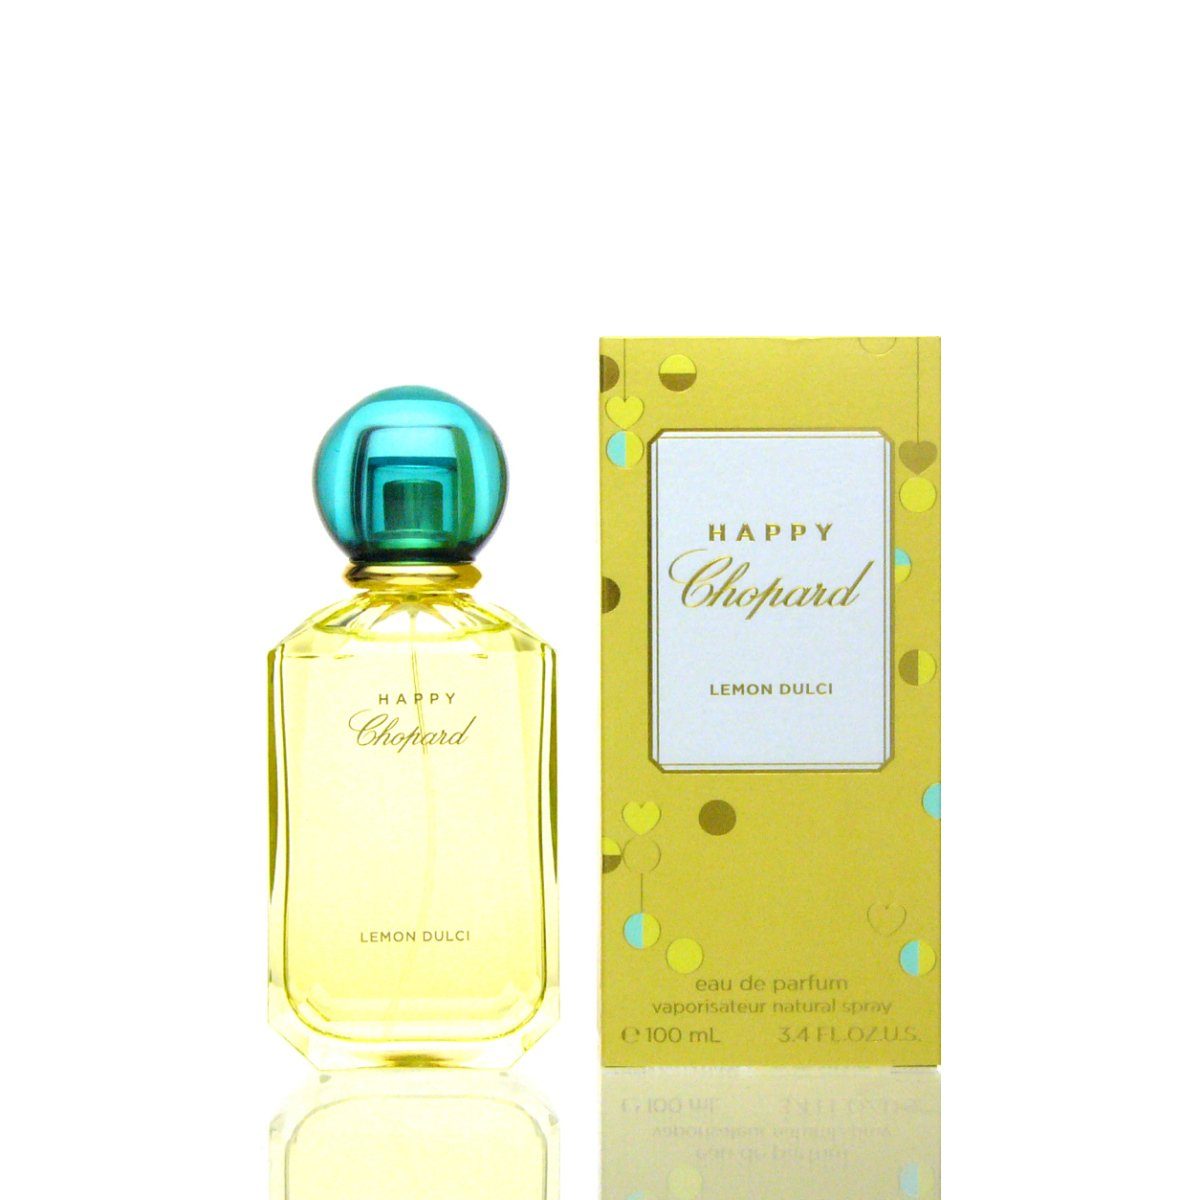 Chopard Parfum Lemon Eau Dulci Chopard Chopard de Happy Parfum ml Eau de 100